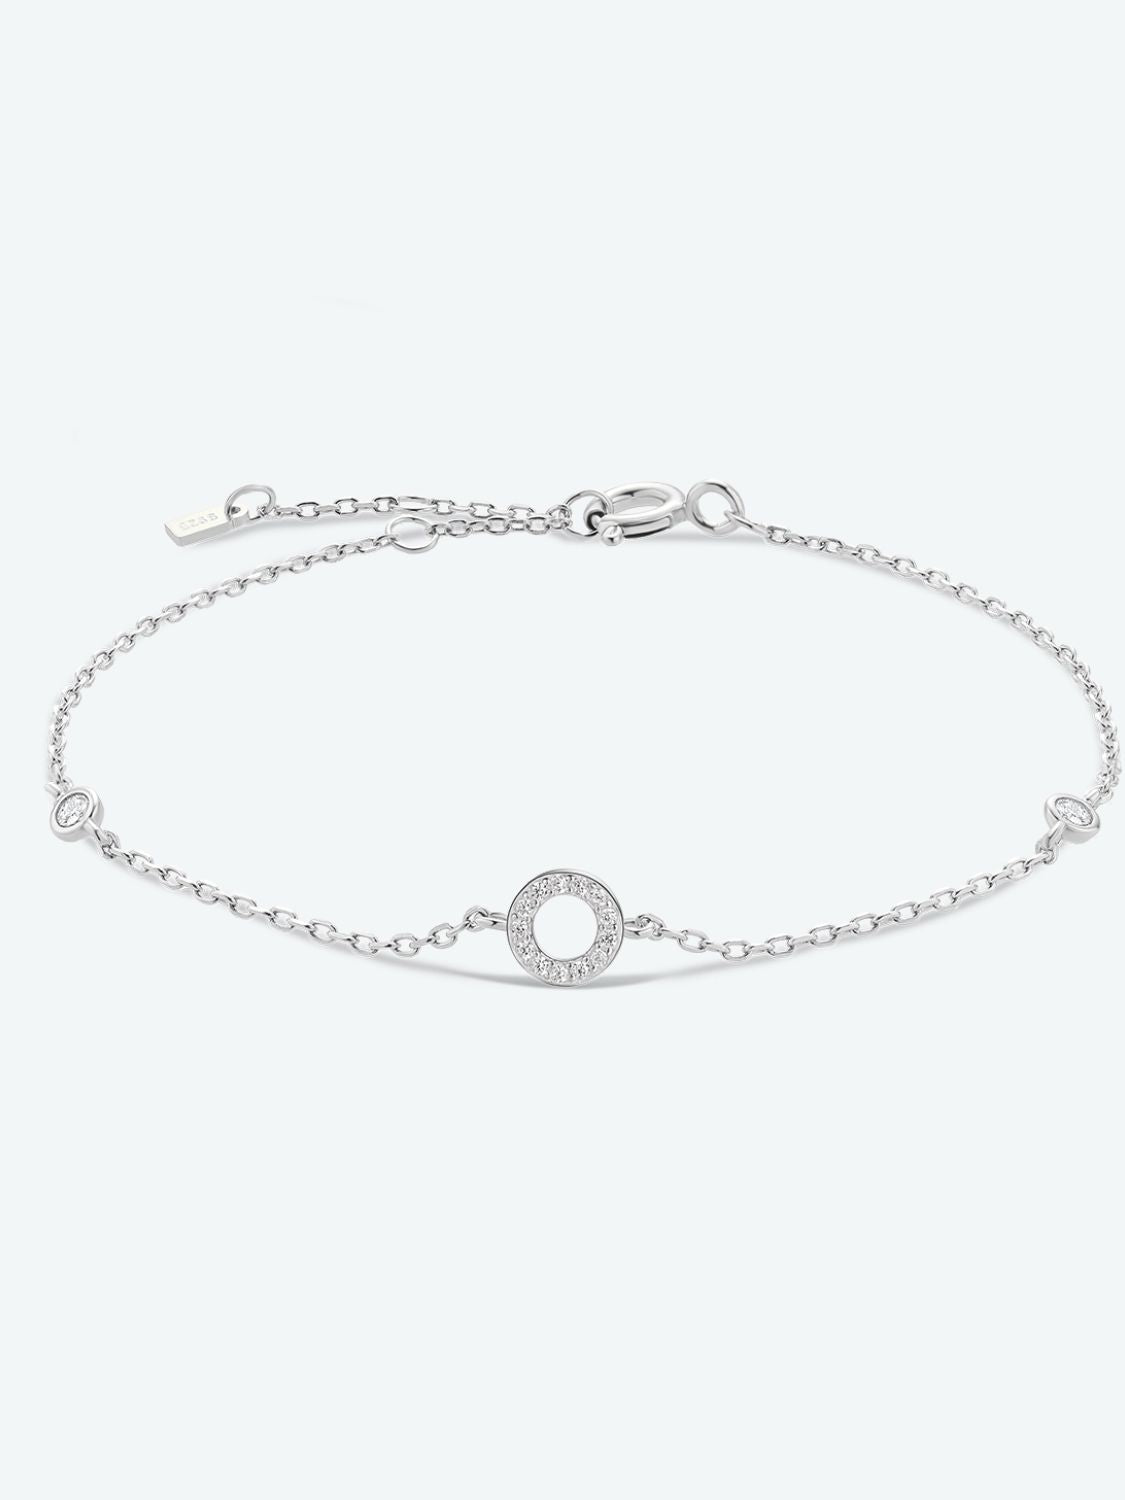 L To P Zircon 925 Sterling Silver Bracelet - O-Silver / One Size - Women’s Jewelry - Bracelets - 22 - 2024